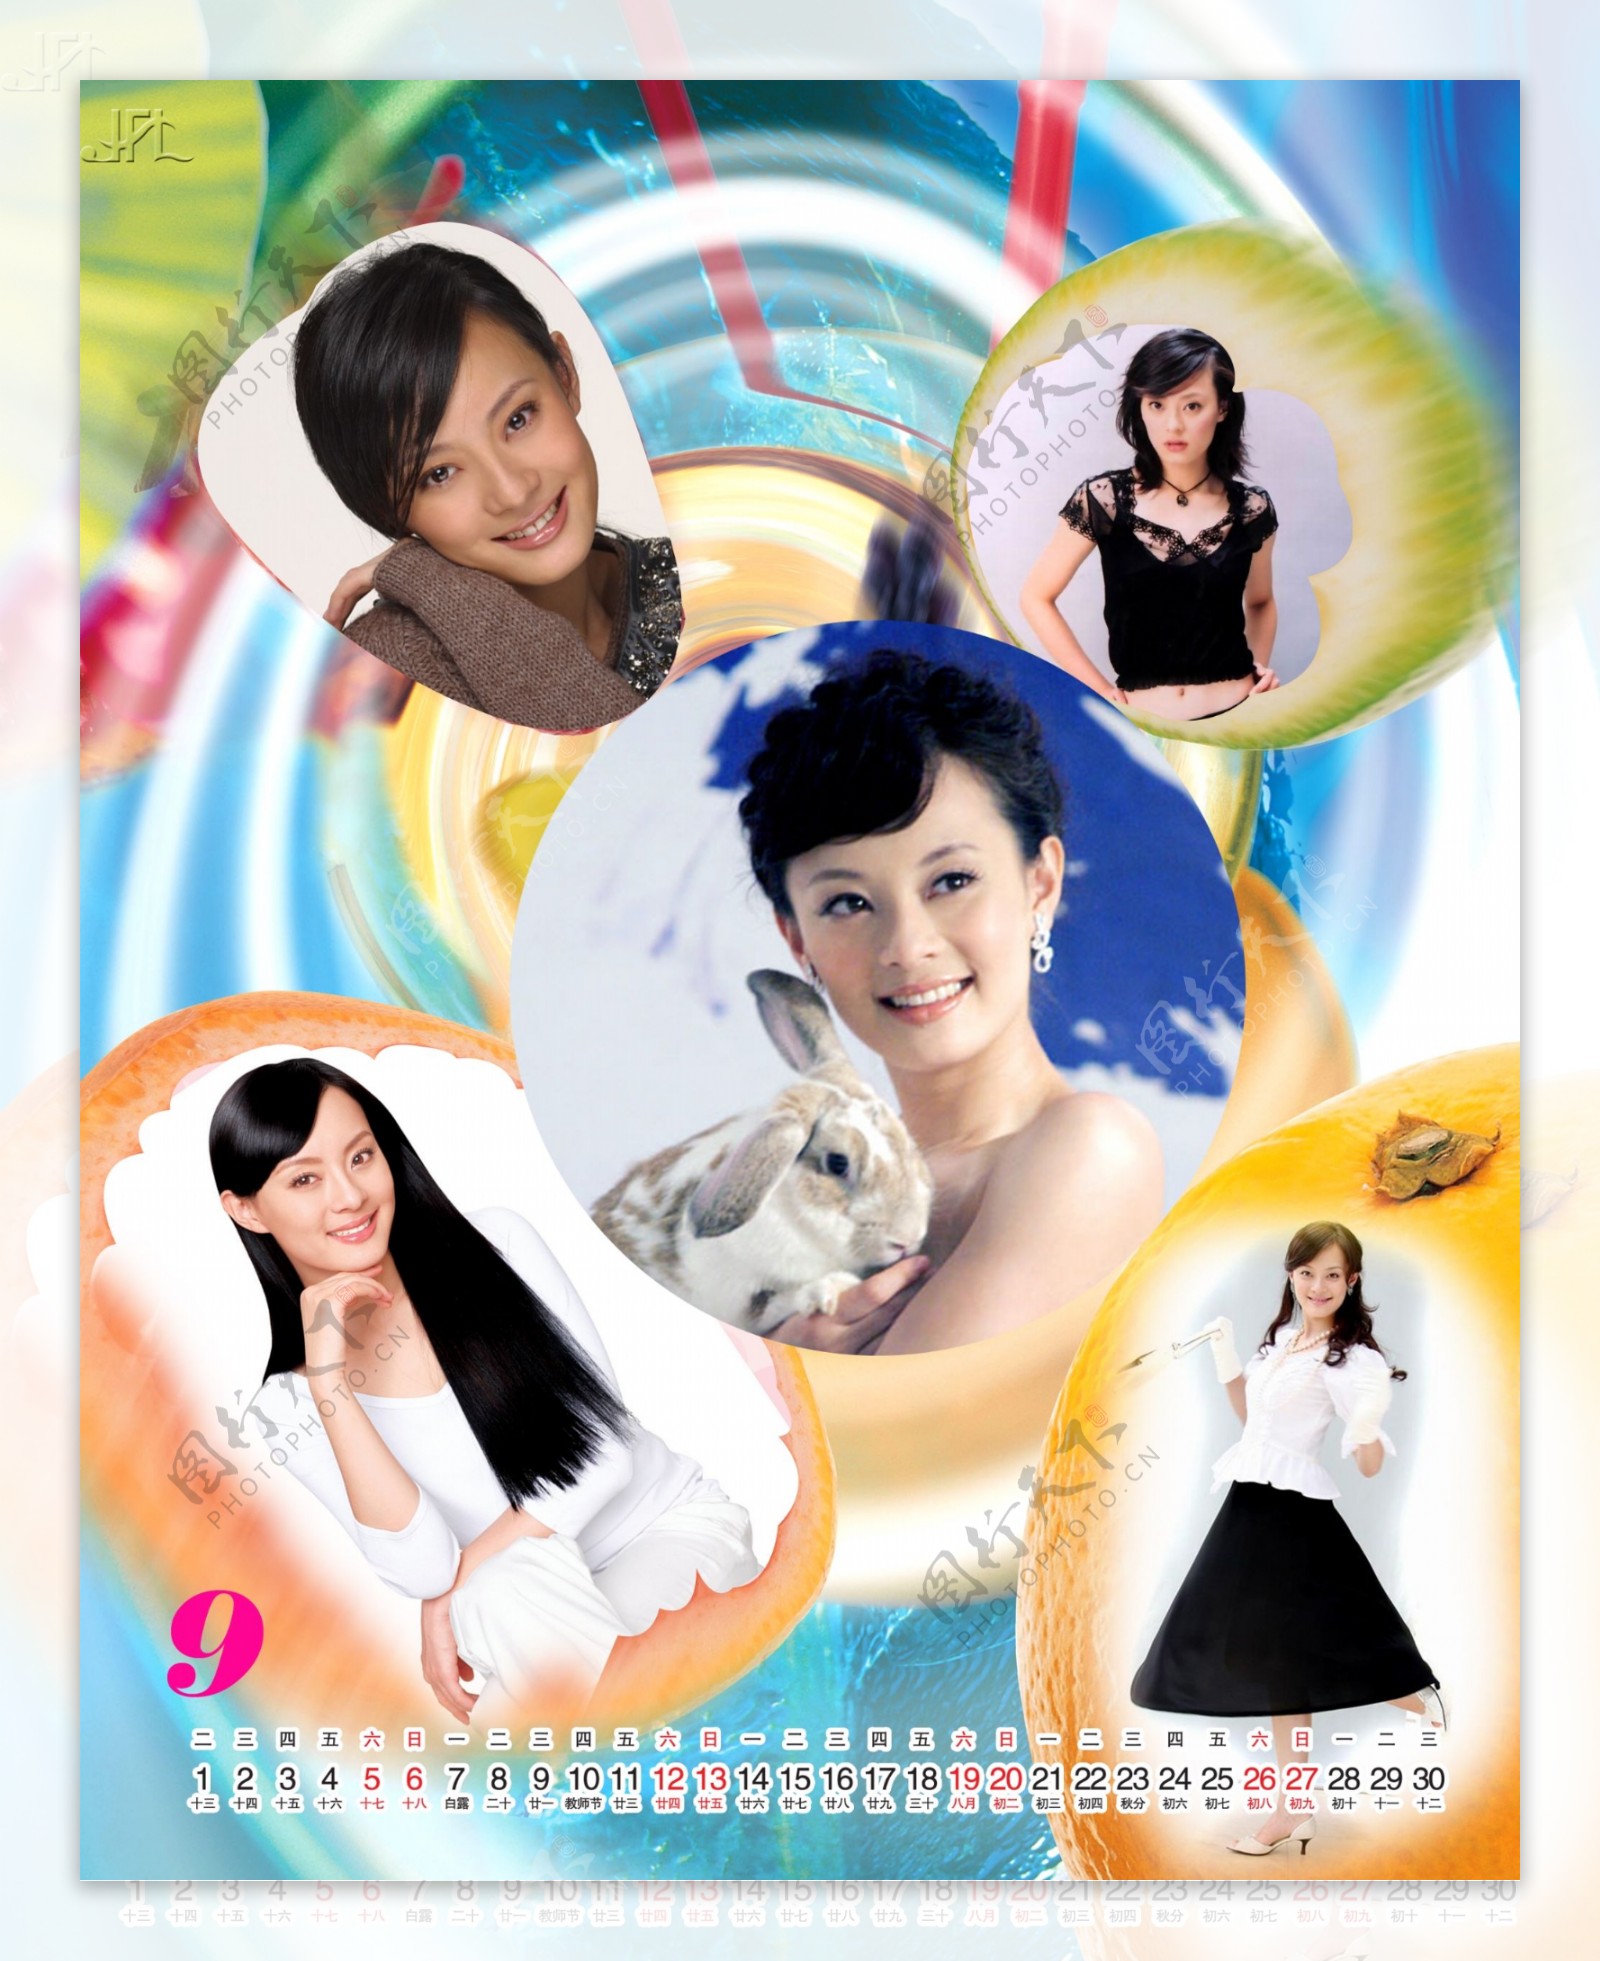 2009年日历模板2009年台历psd模板激情飞扬水果女孩全套共13张含封面